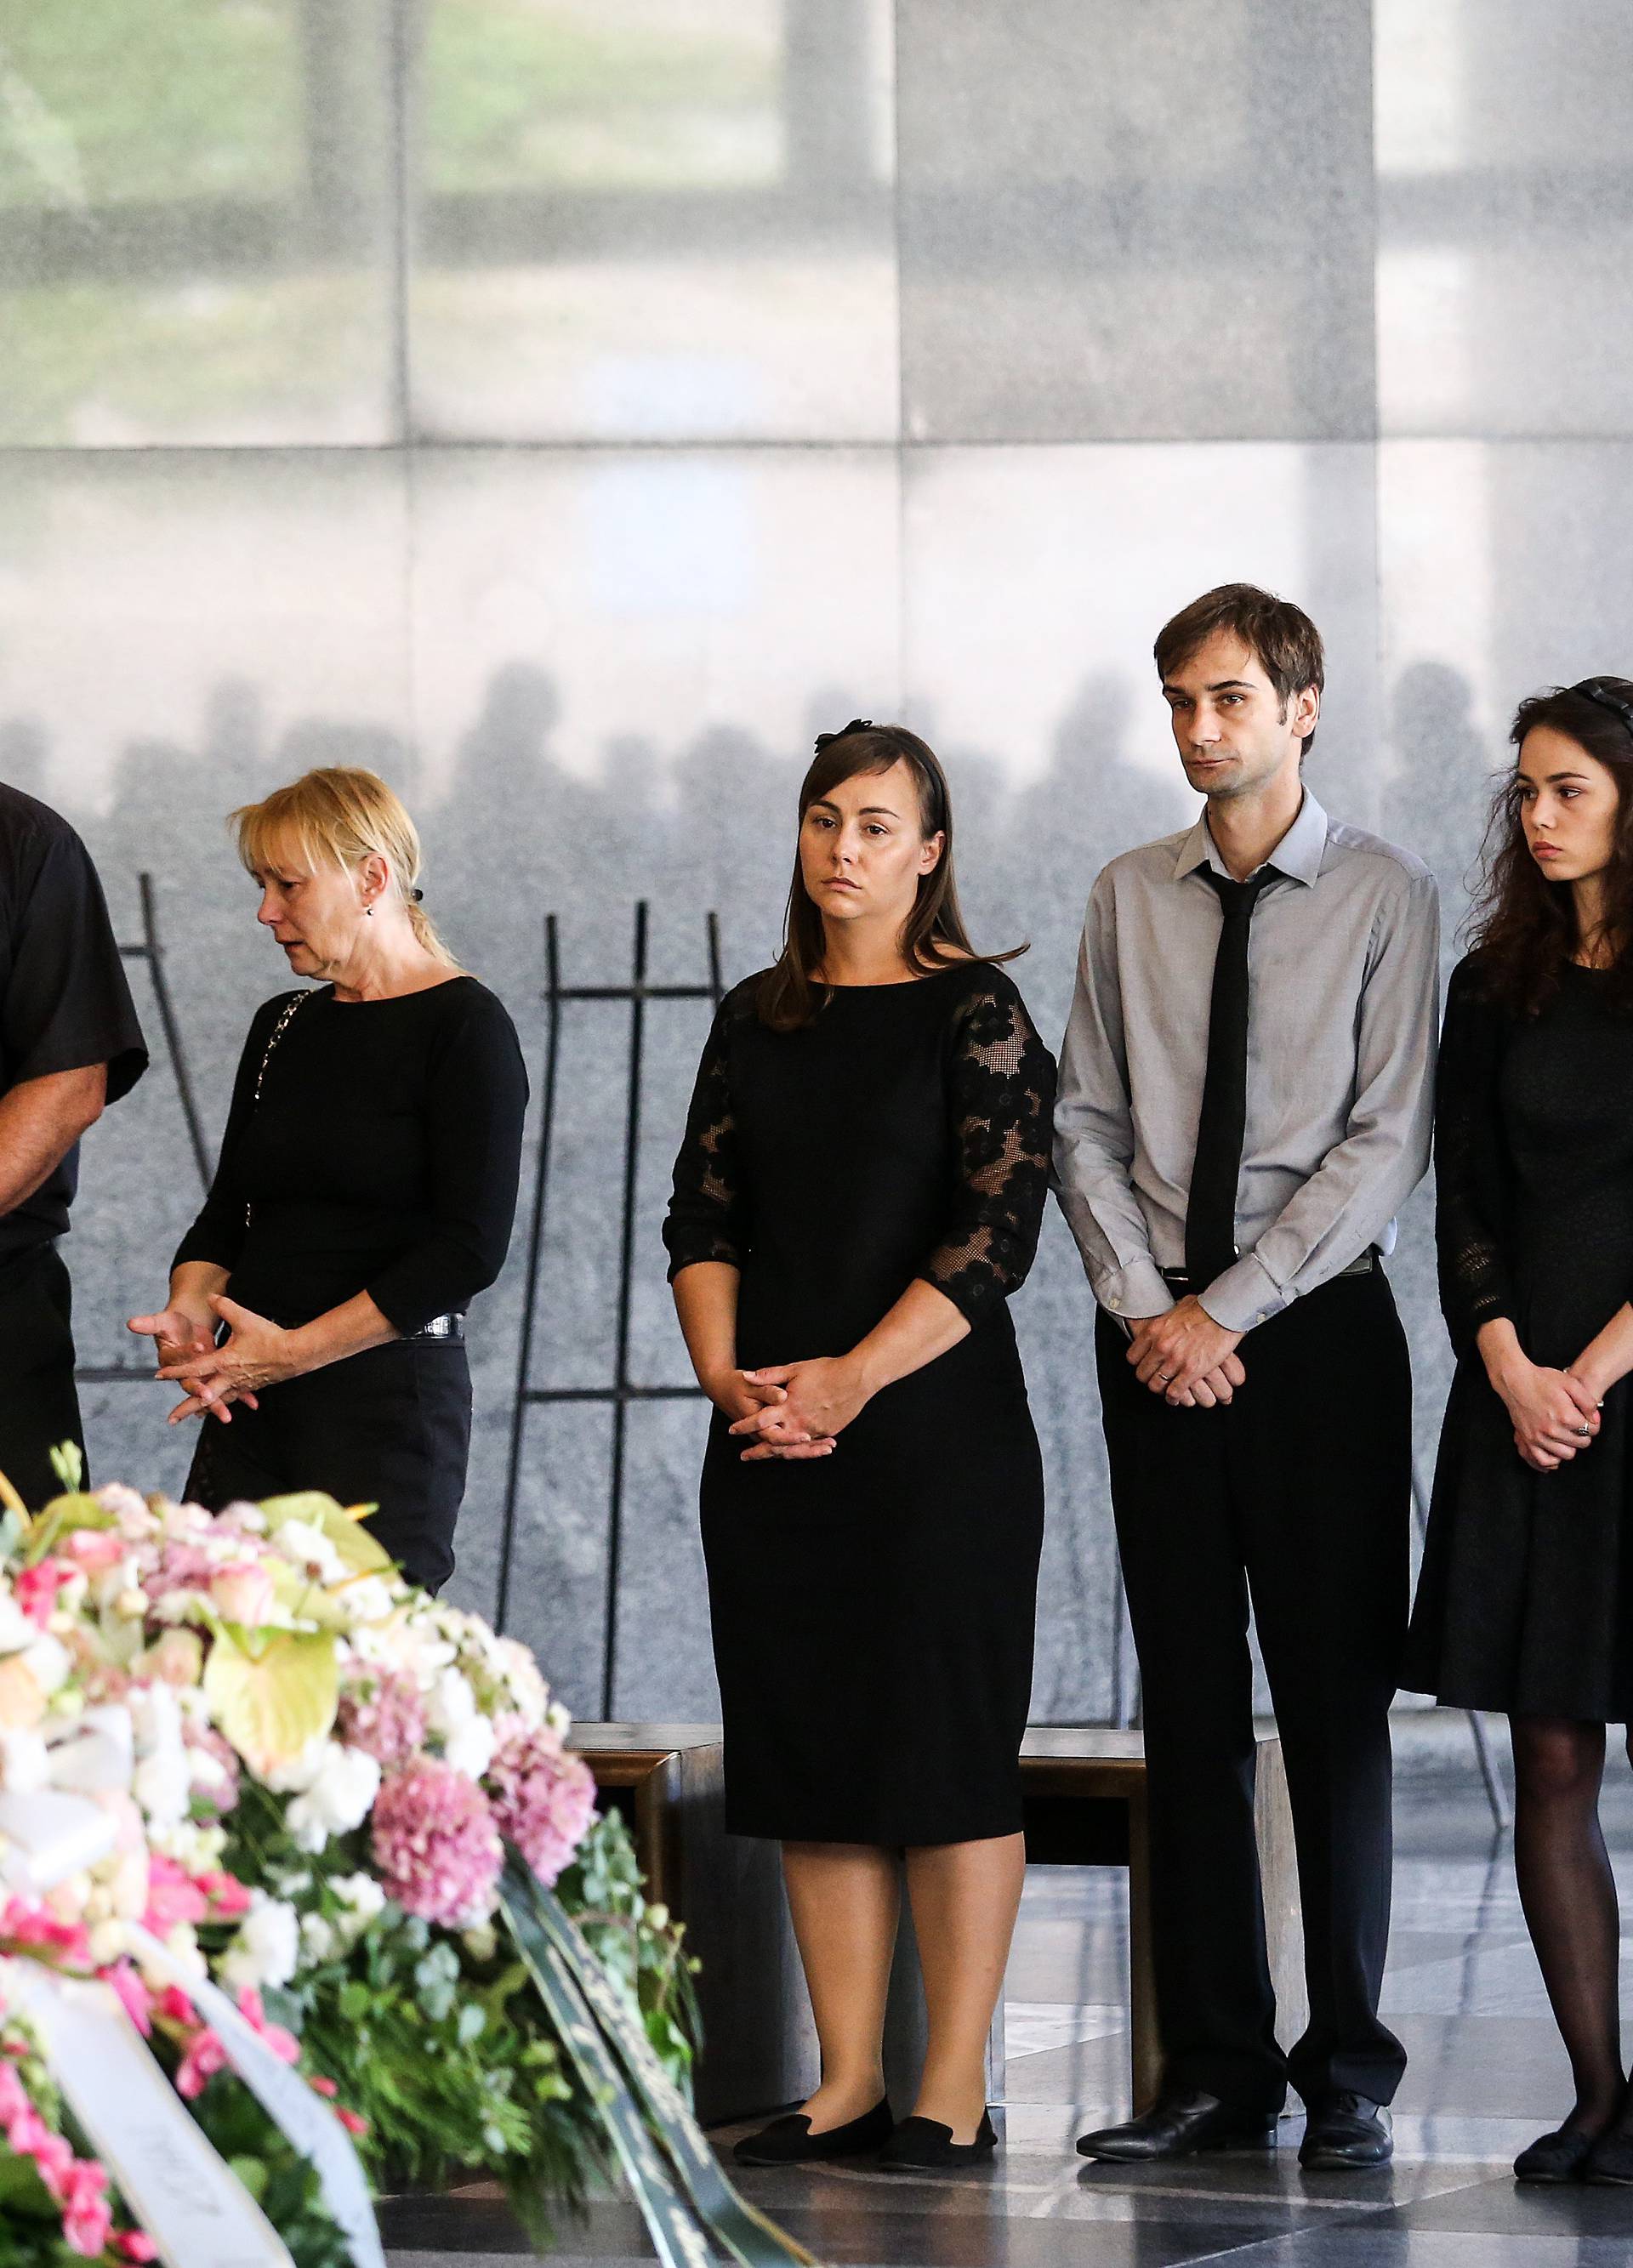 Unuci plakali: Prijatelji i obitelj oprostili su se od Marije Kohn